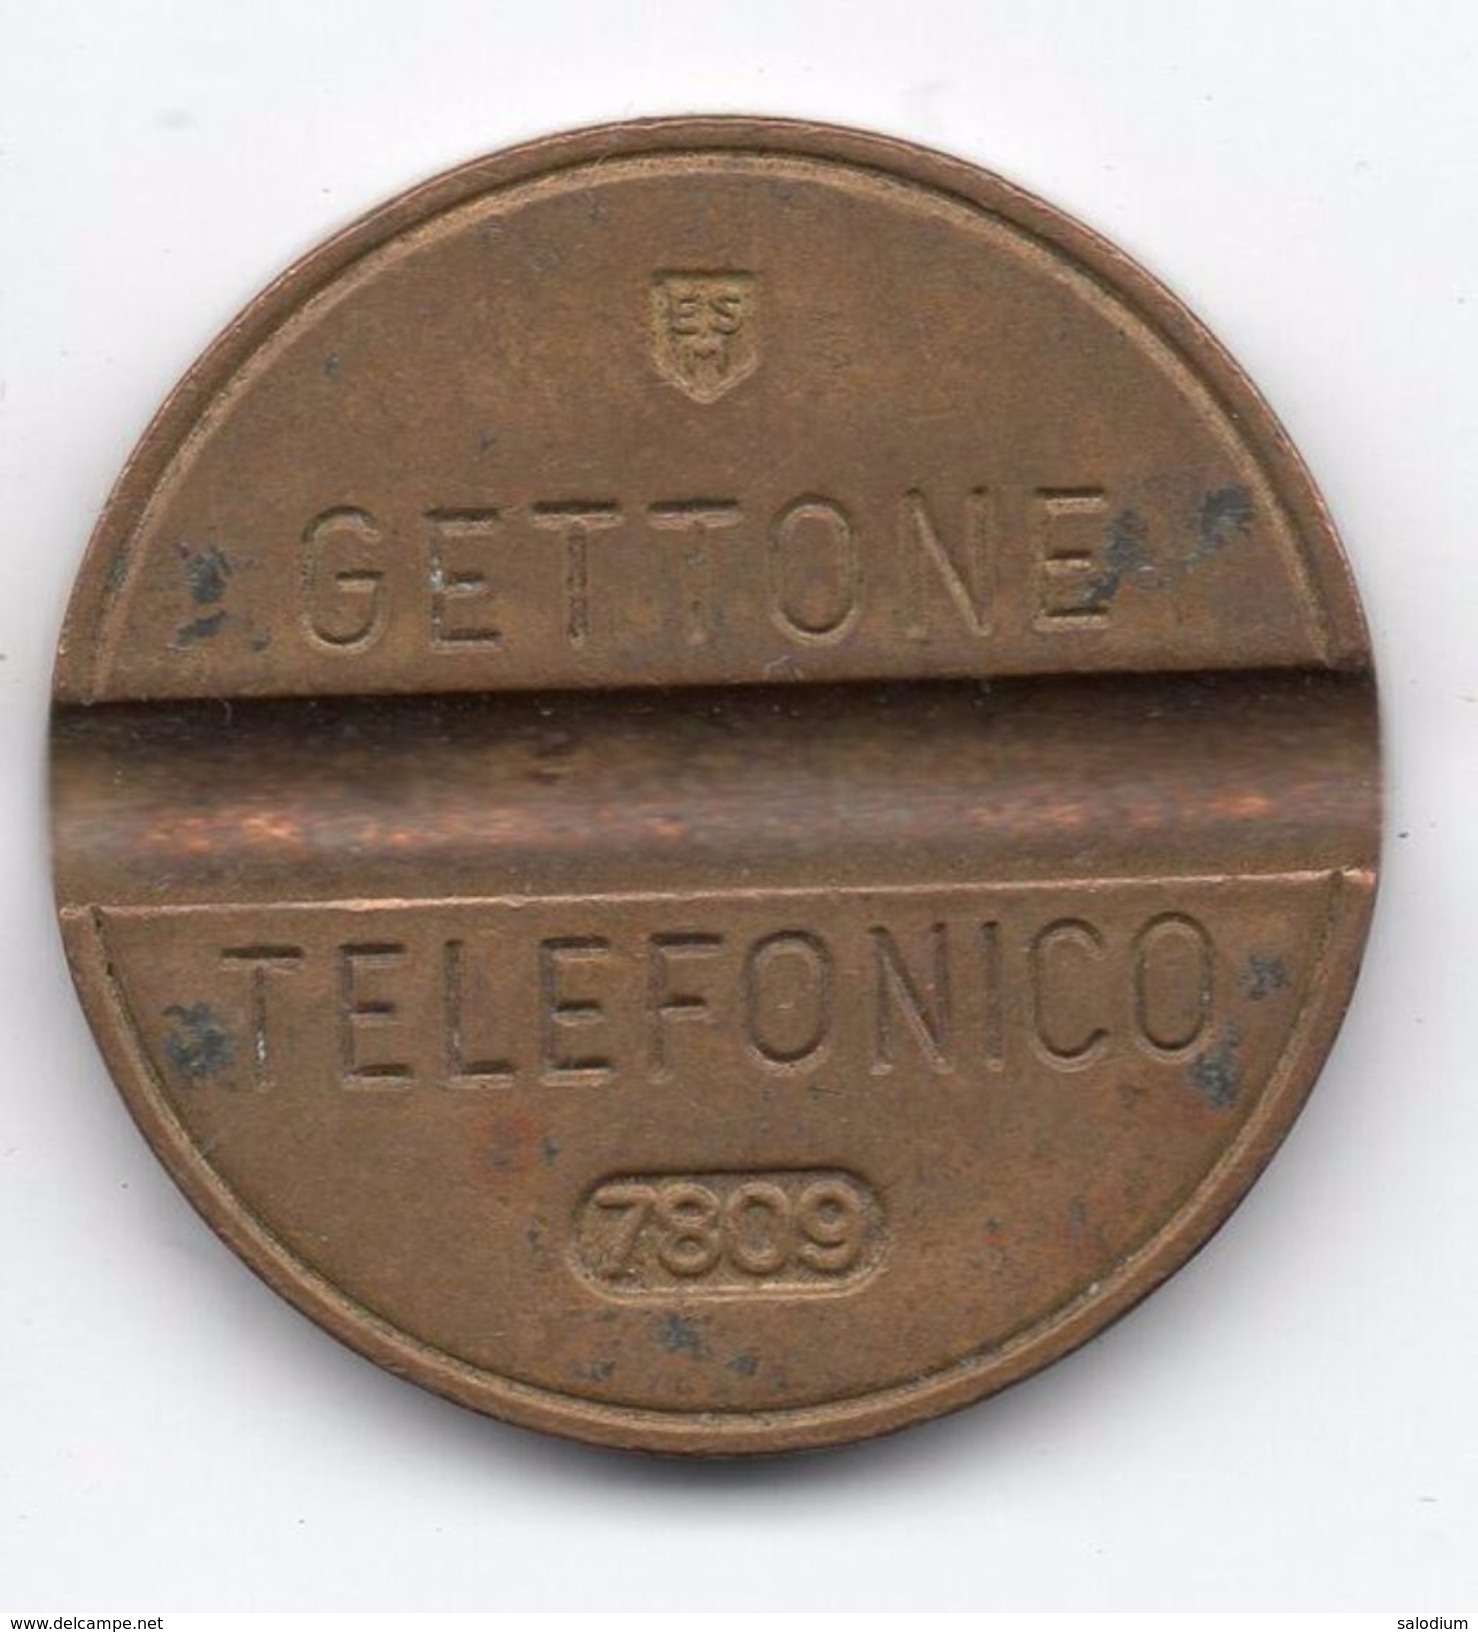 Gettone Telefonico 7809  Token Telephone - (Id-624) - Professionnels/De Société